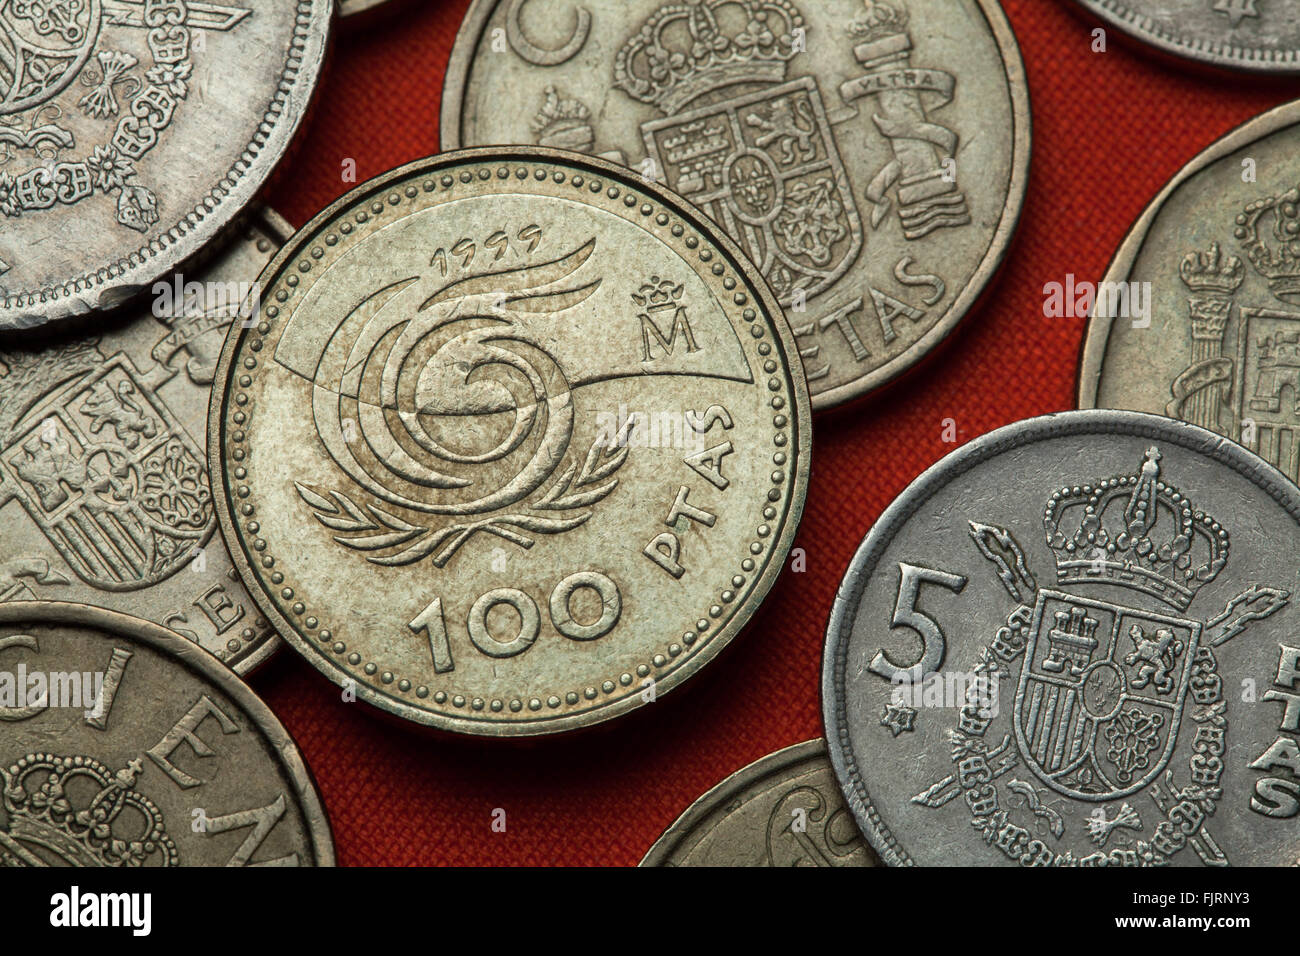 Münzen von Spanien. Emblem für 1999 internationalen Jahres der älteren Menschen, die in der spanischen 100-Peseten-Münze abgebildet (1999). Stockfoto